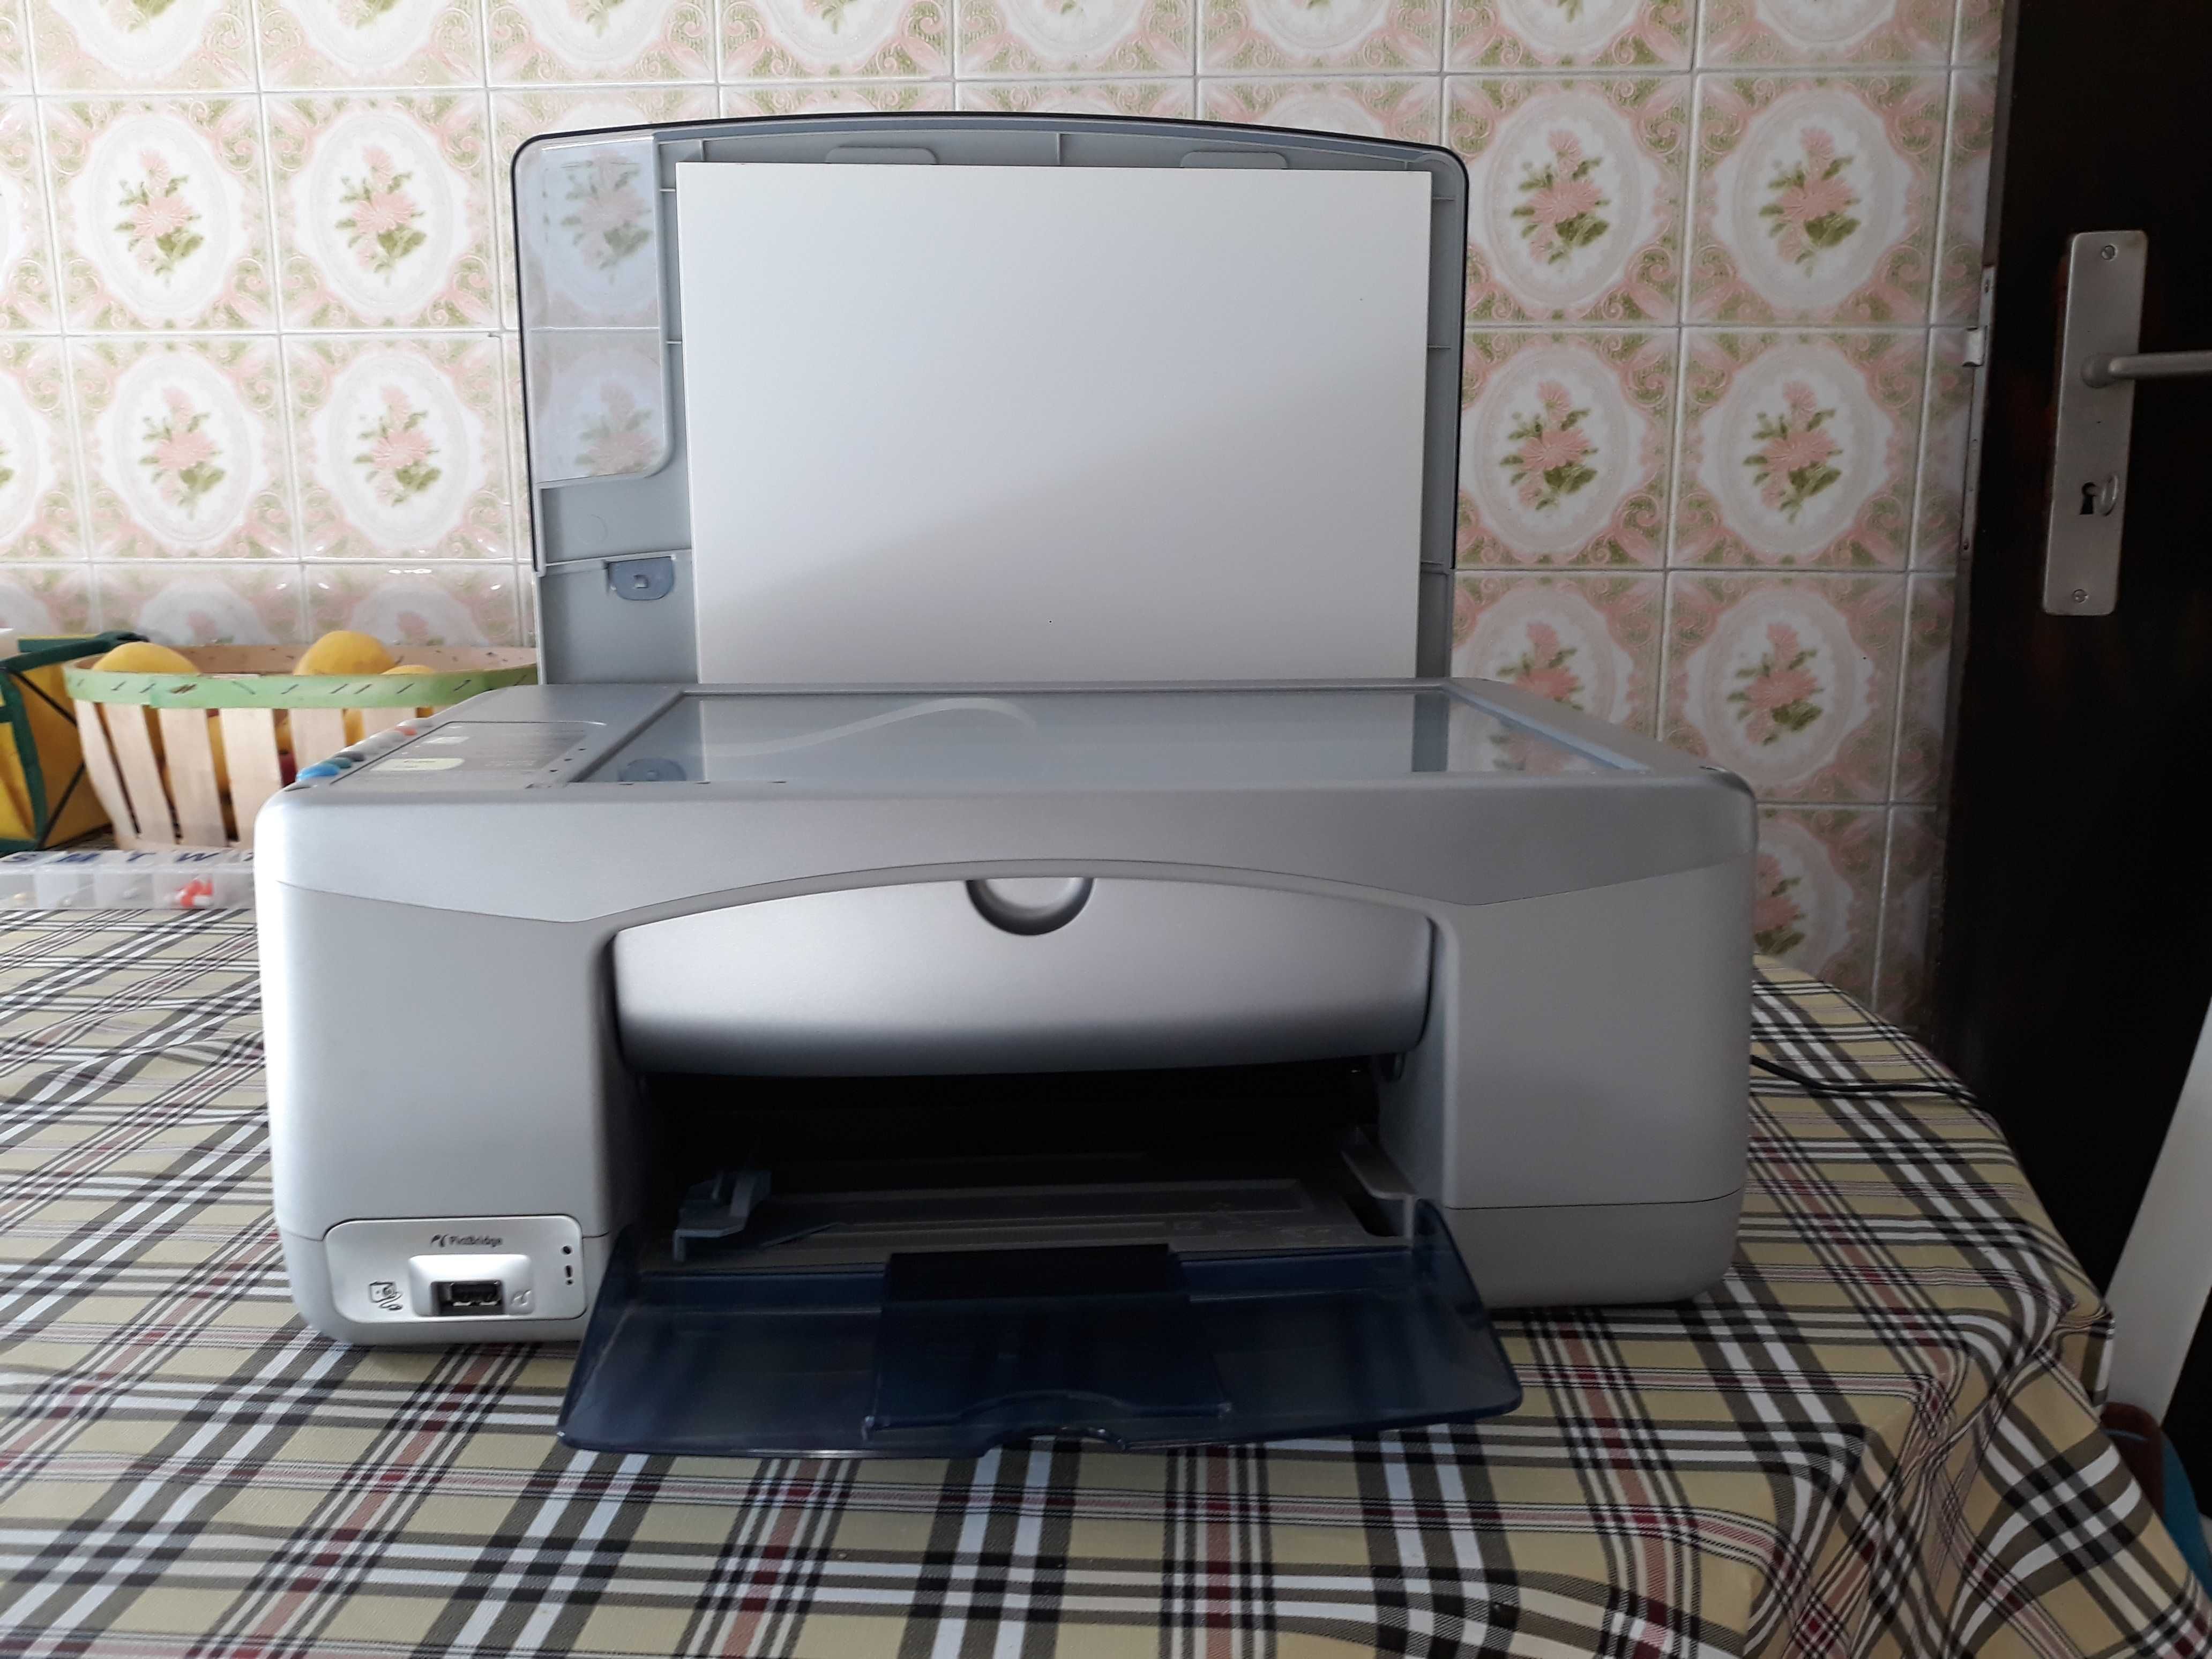 Impressora-fotocopiadora-scaner hp-1310